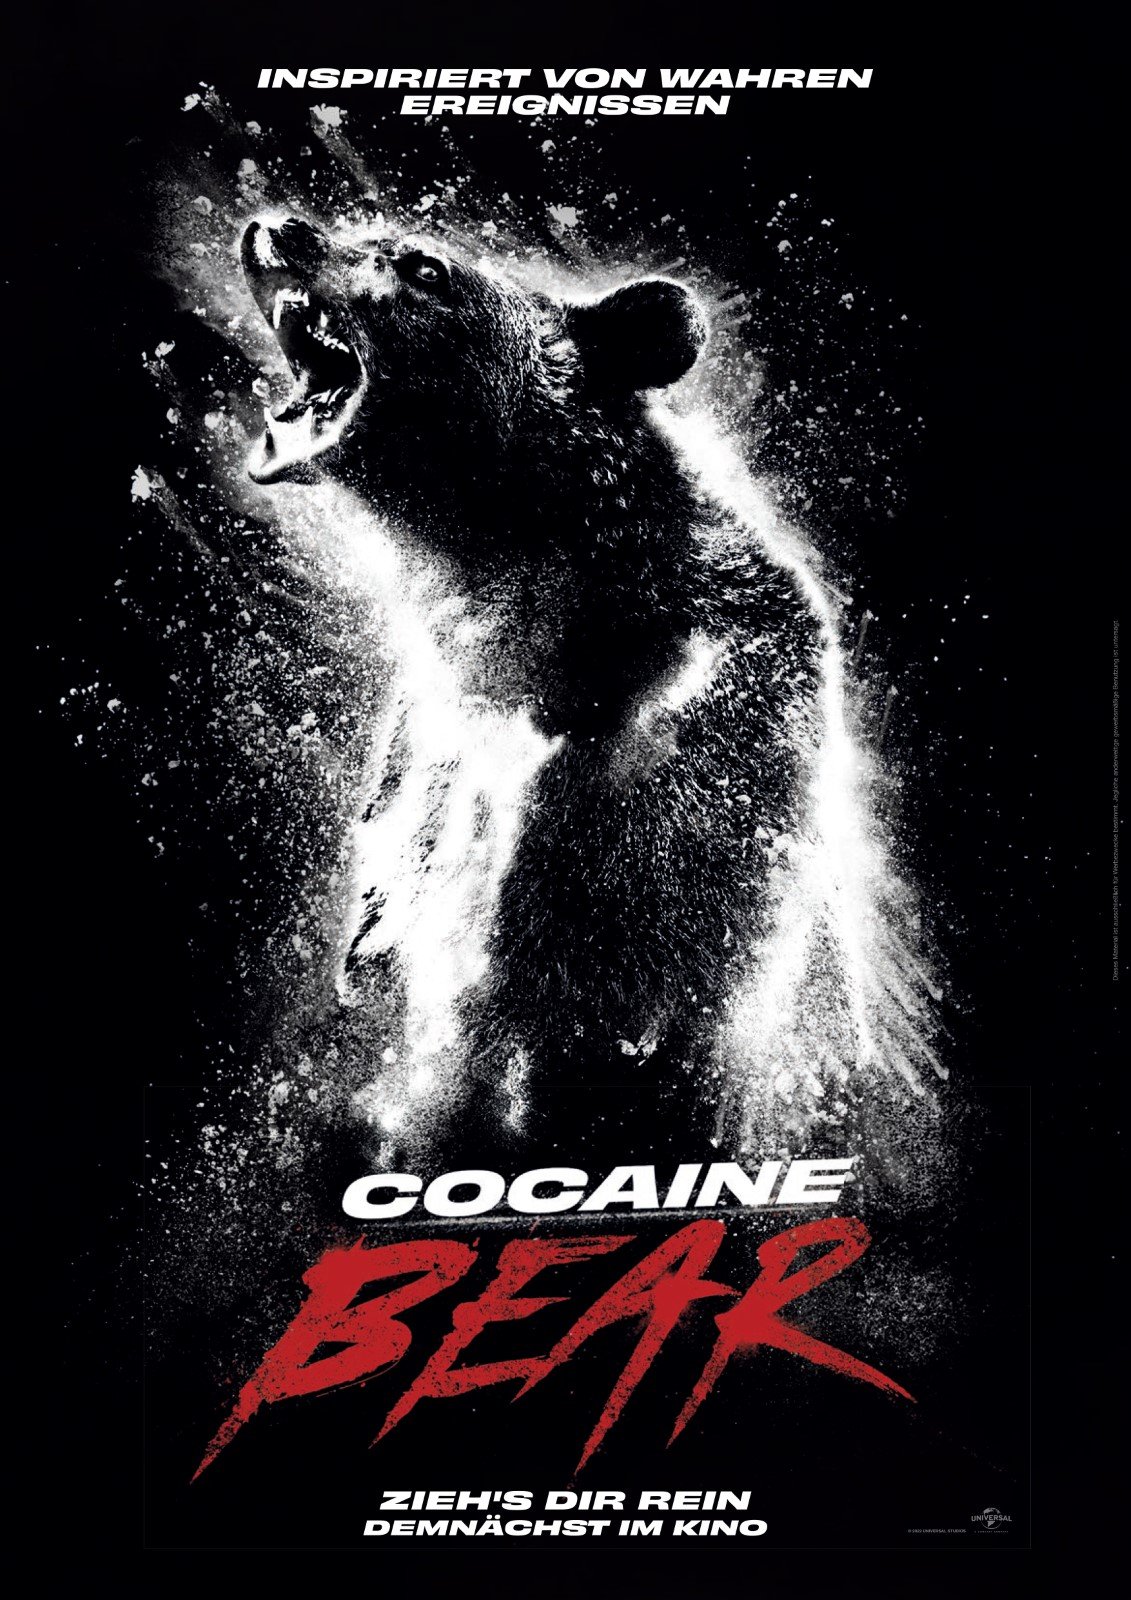 COCAINE BEAR 0 (0)